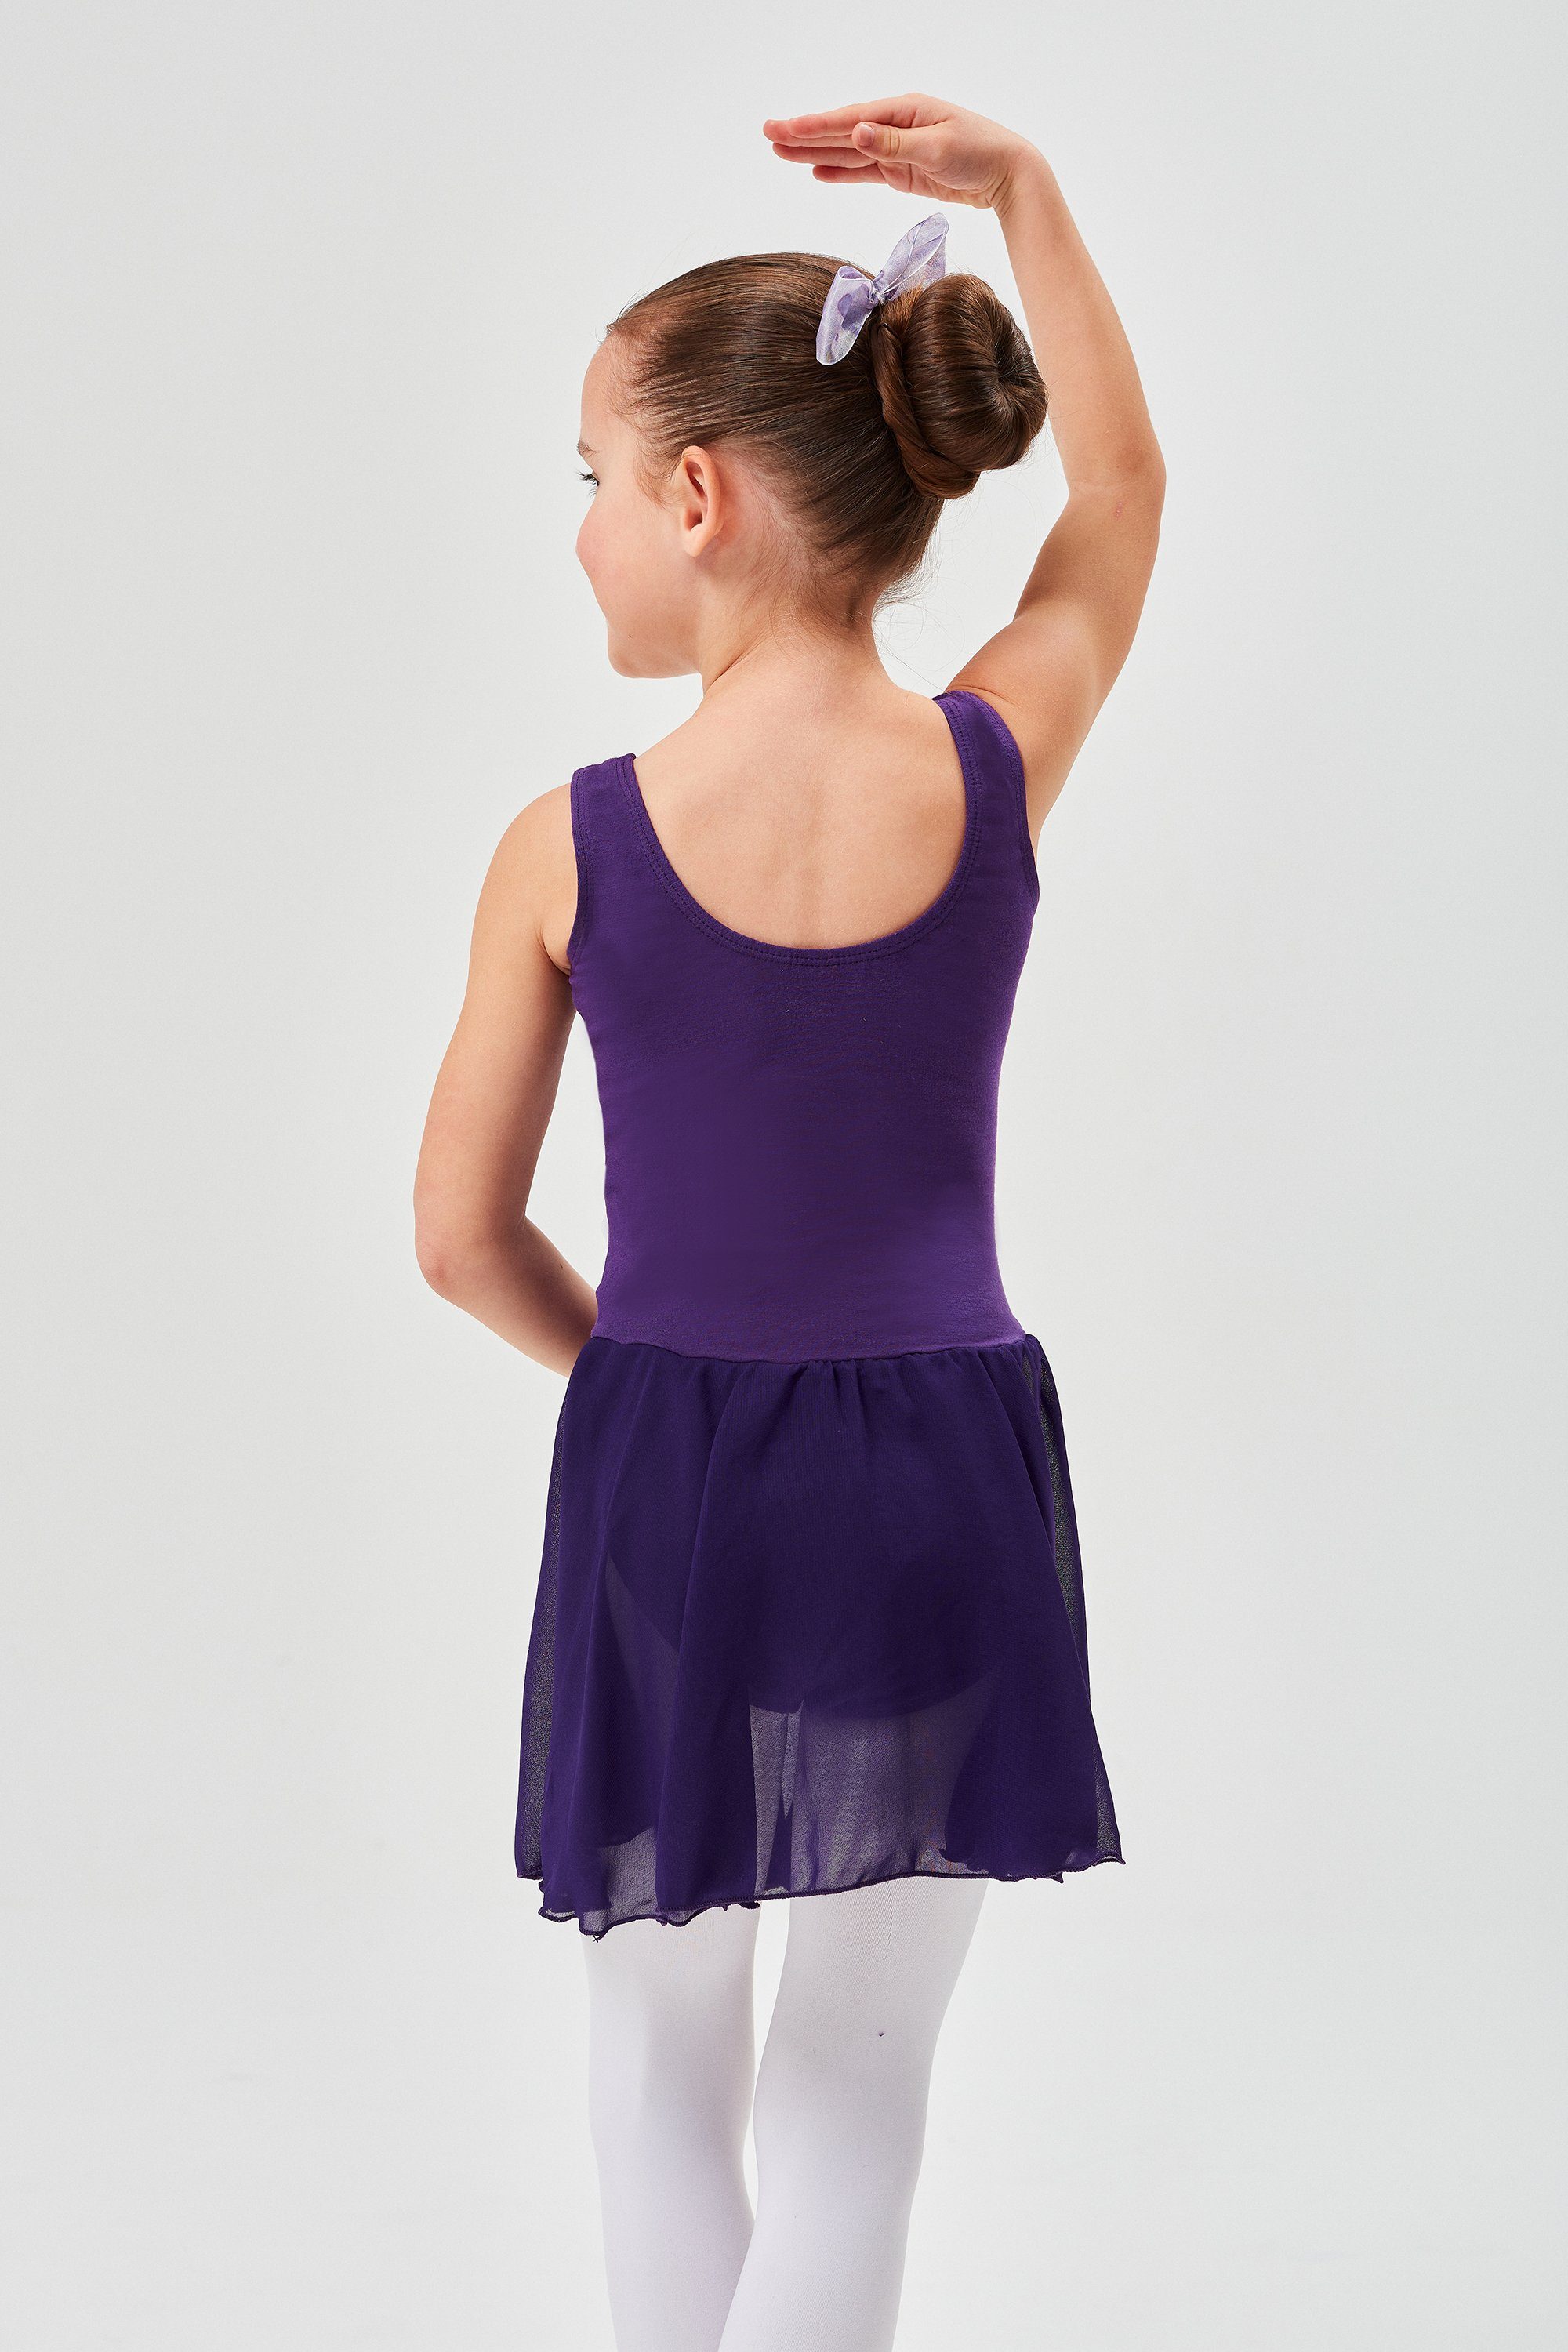 Minnie Baumwollmaterial mit Ballett tanzmuster weichem Mädchen Ballettkleid wunderbar für lila Trikot Chiffon Chiffonkleid aus Röckchen